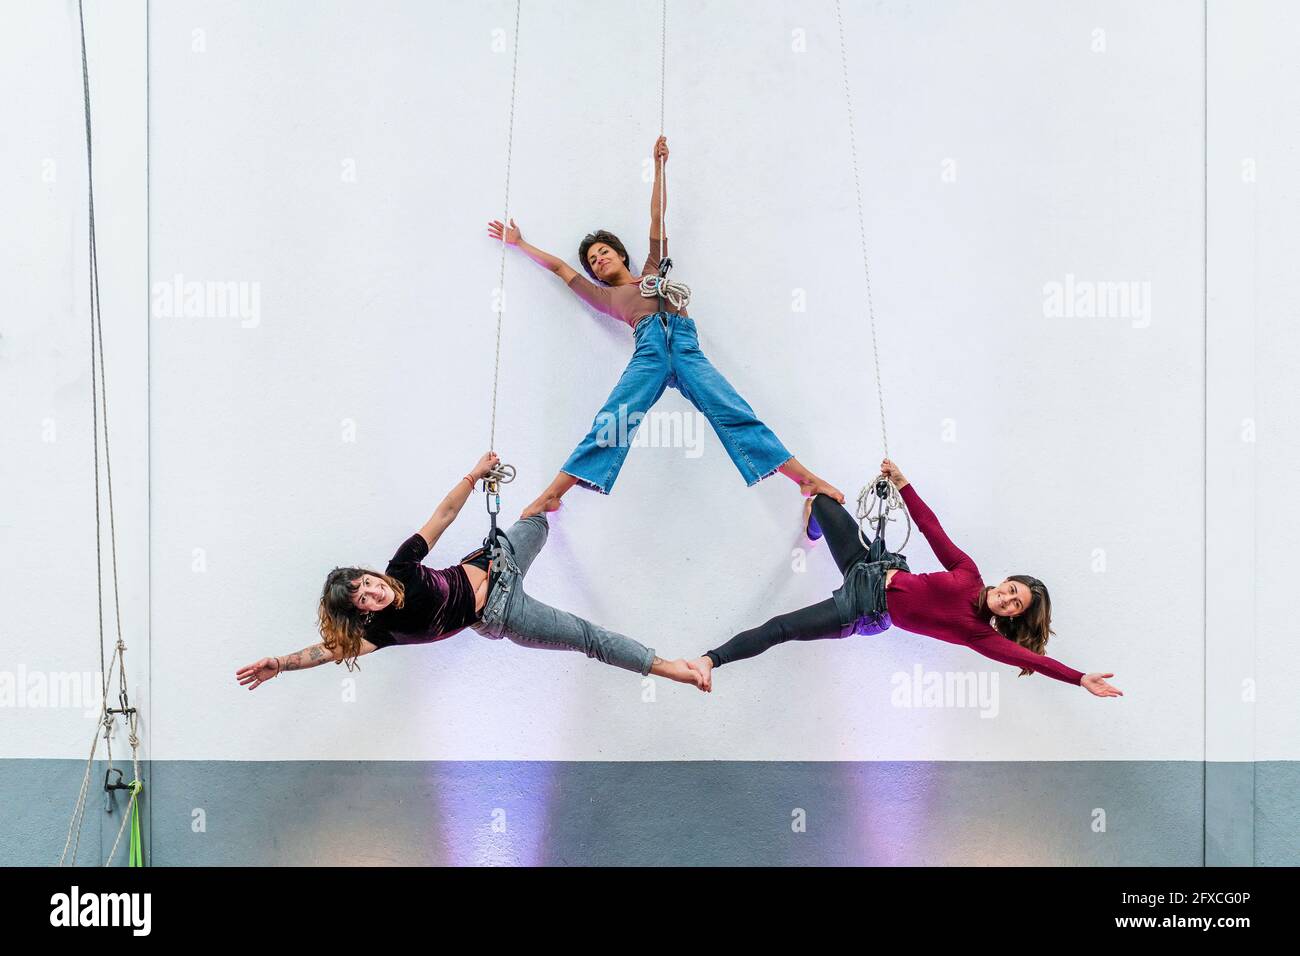 Appassionata ballerina che pratica mentre si appende insieme sulla corda Foto Stock